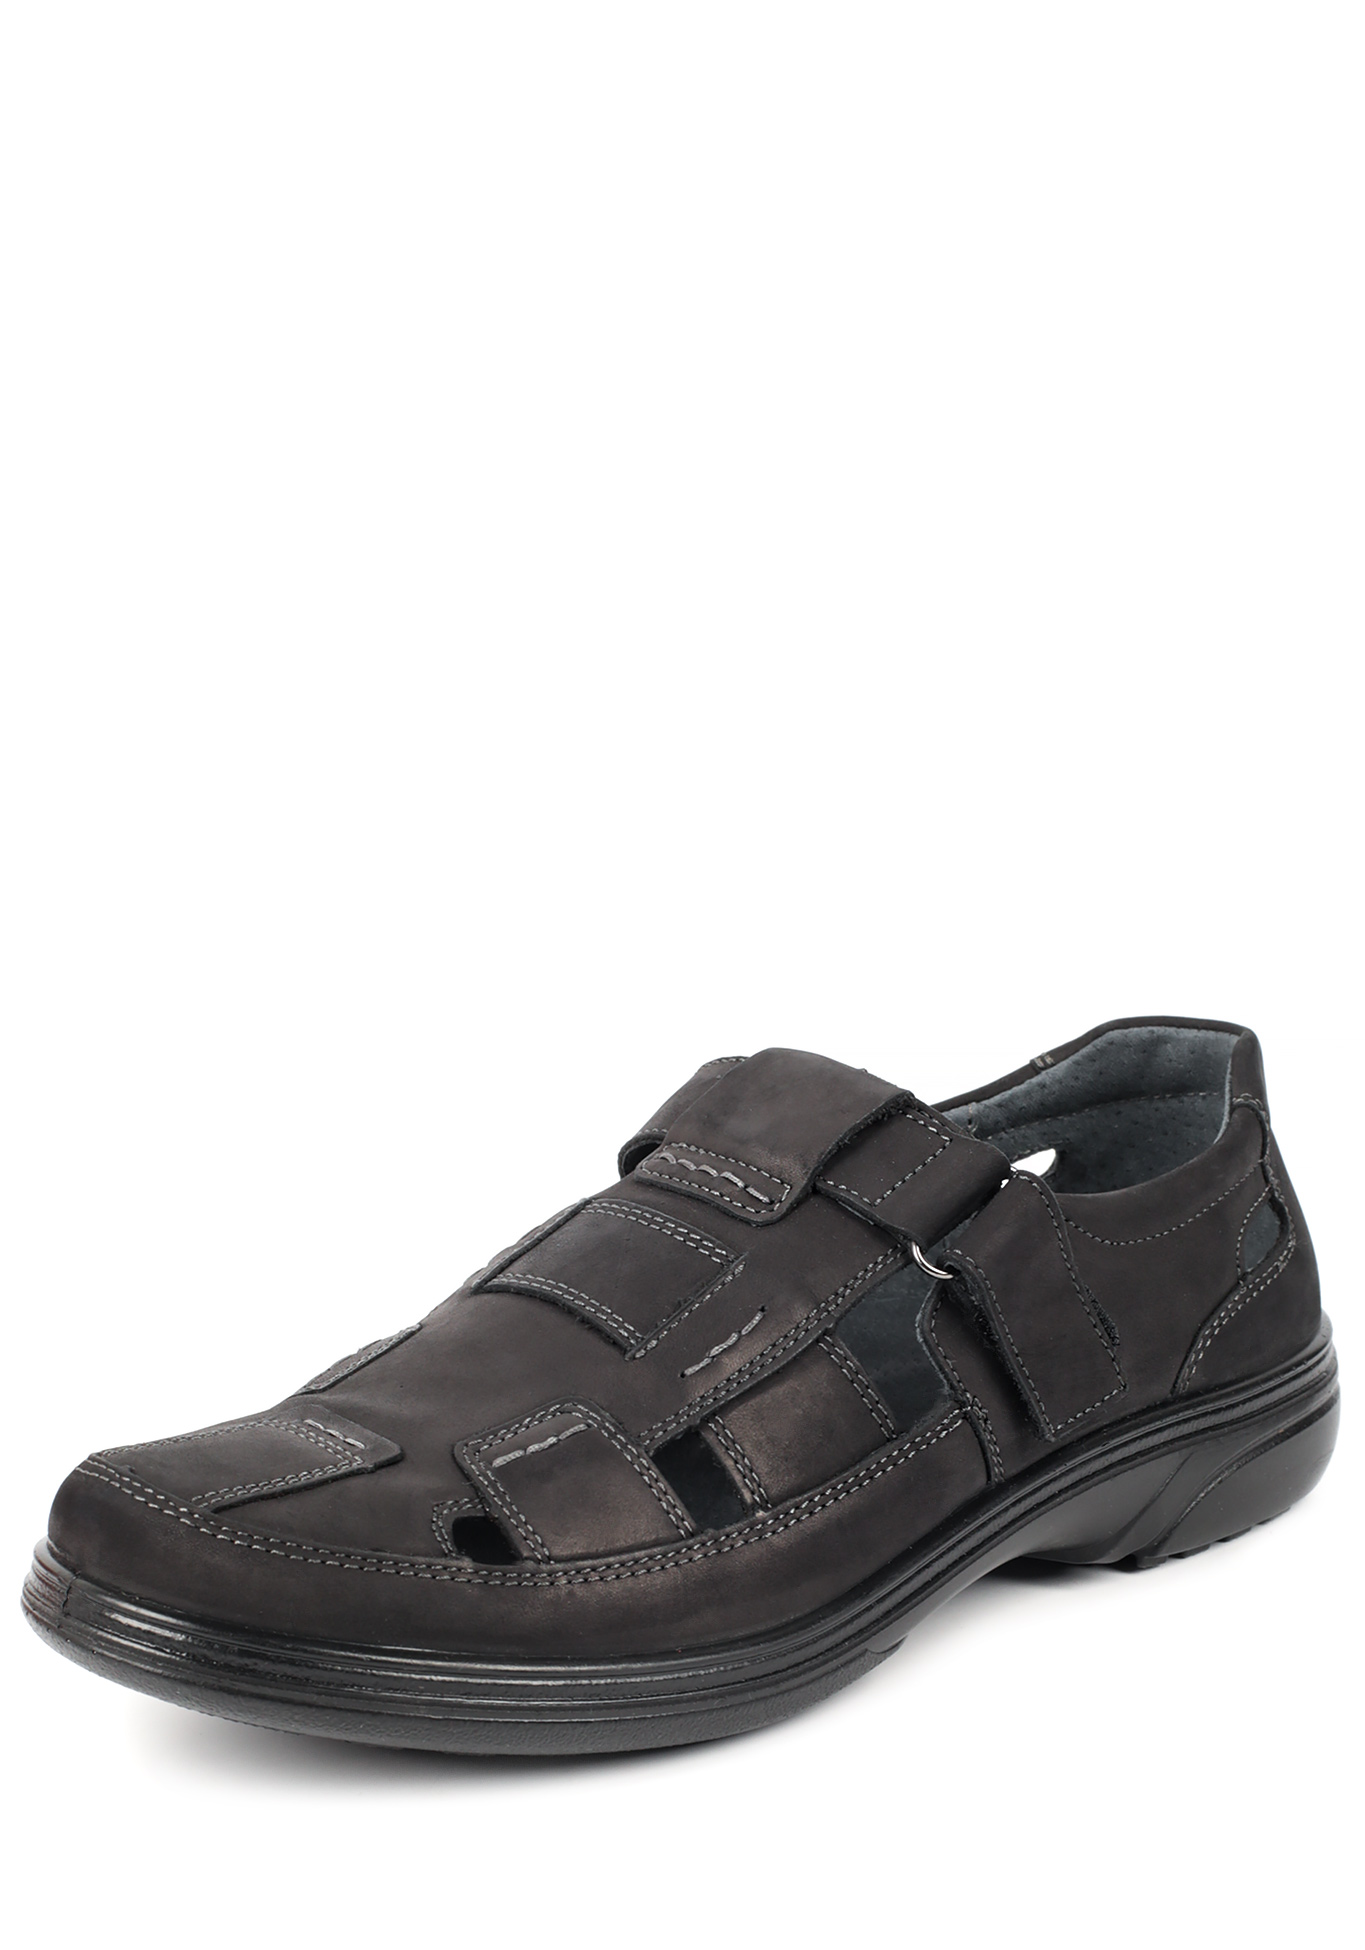 Туфли летние мужские "Ричи" Marko, размер 41, цвет черный - фото 1